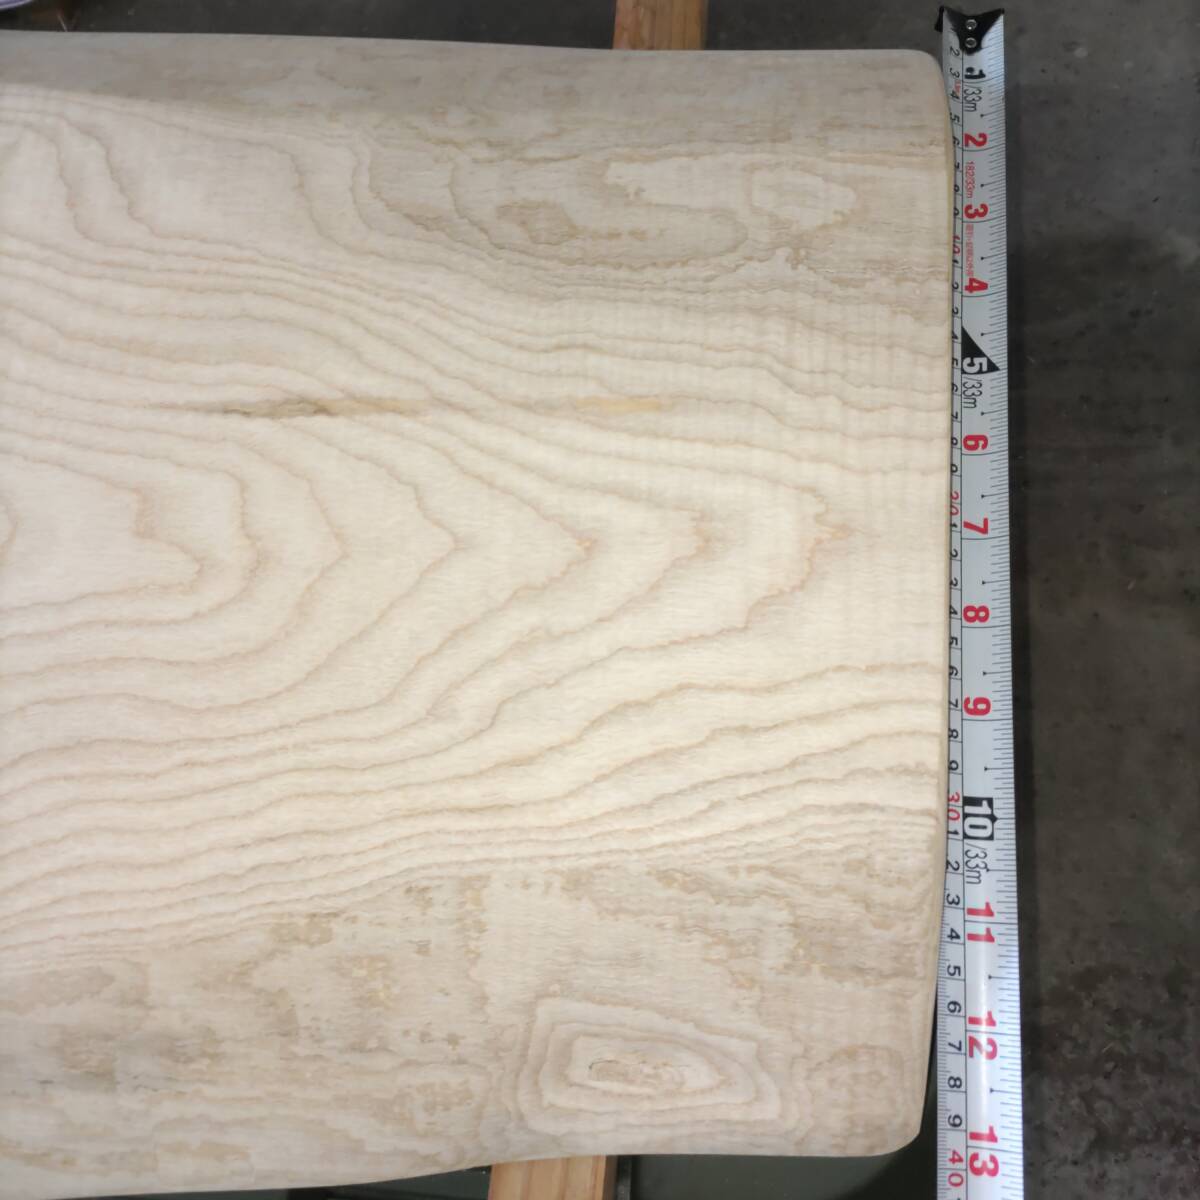 イタヤカエデ 楓 約長900幅380〜500厚45ミリ 製材後約半年 耳付き板 一枚板 天然木 無垢 未乾燥 花台 多肉棚 テーブル板の画像7